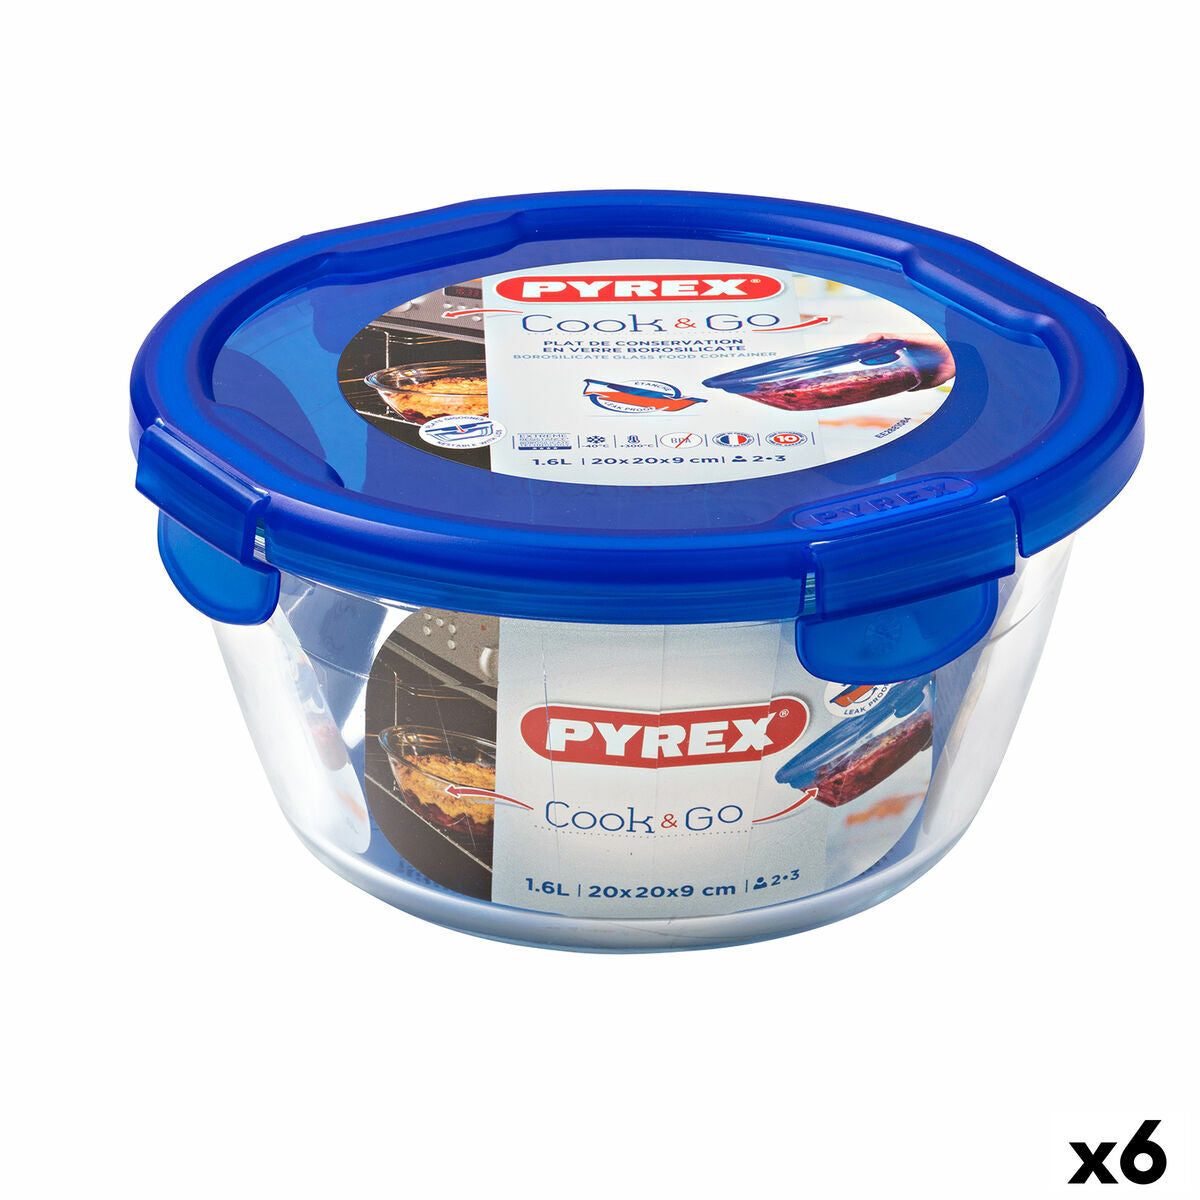 Hermetische Lunchtrommel Pyrex Cook & Go 20 x 20 x 10,3 cm Blauw 1,6 L Glas (6 Stuks)